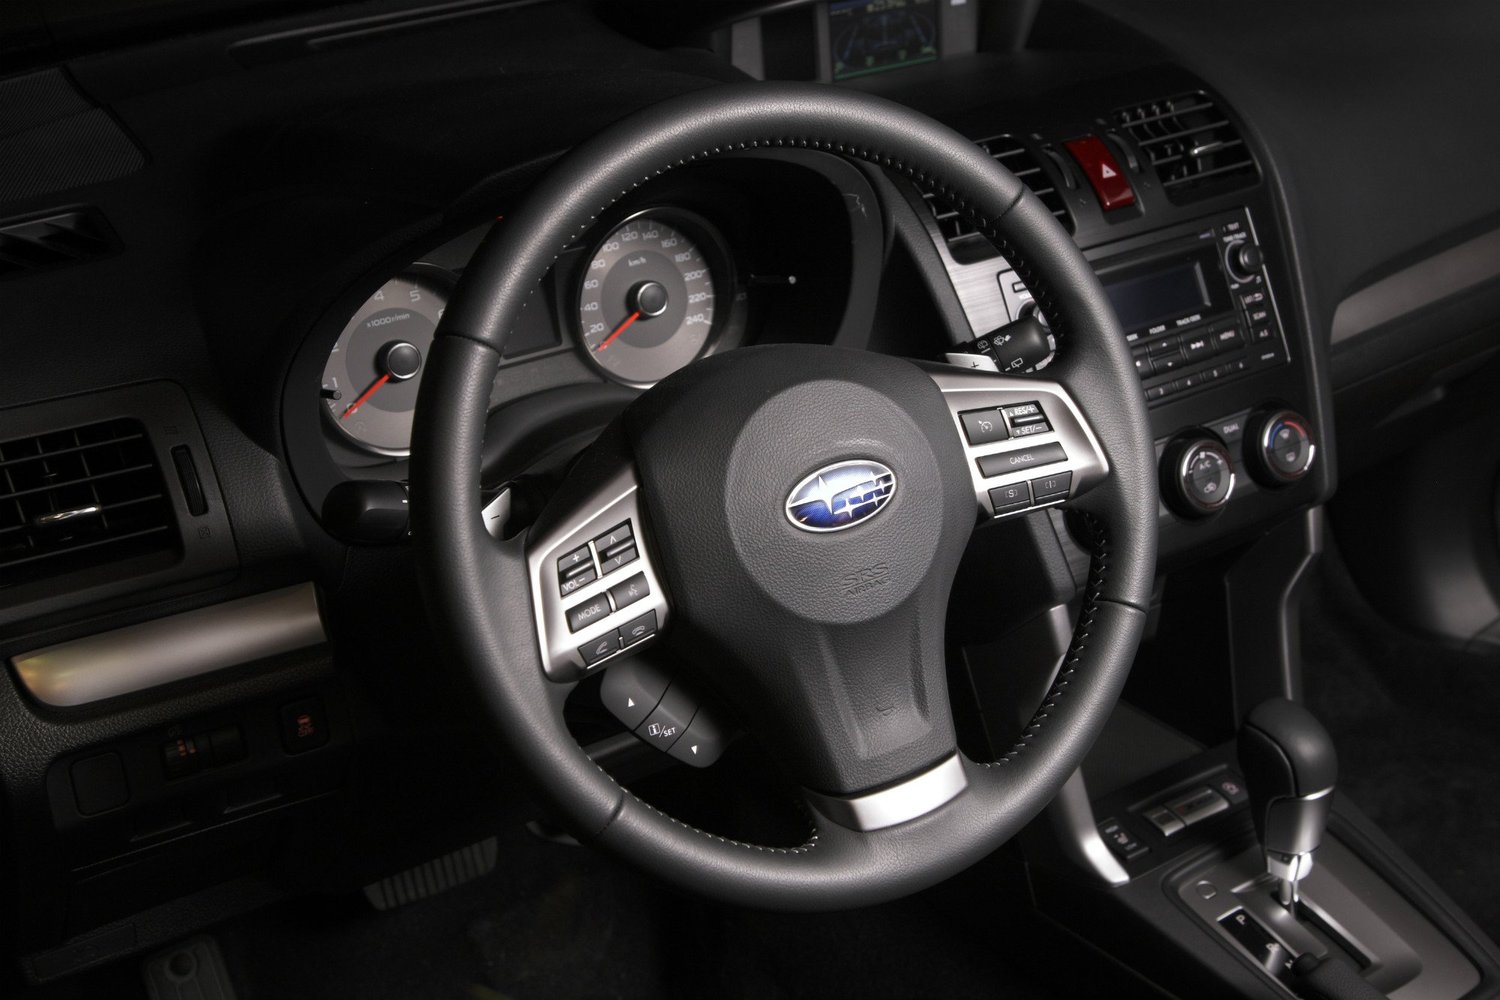 кроссовер Subaru Forester 2013 - 2016г выпуска модификация 1A 2.0 CVT (150 л.с.) 4×4